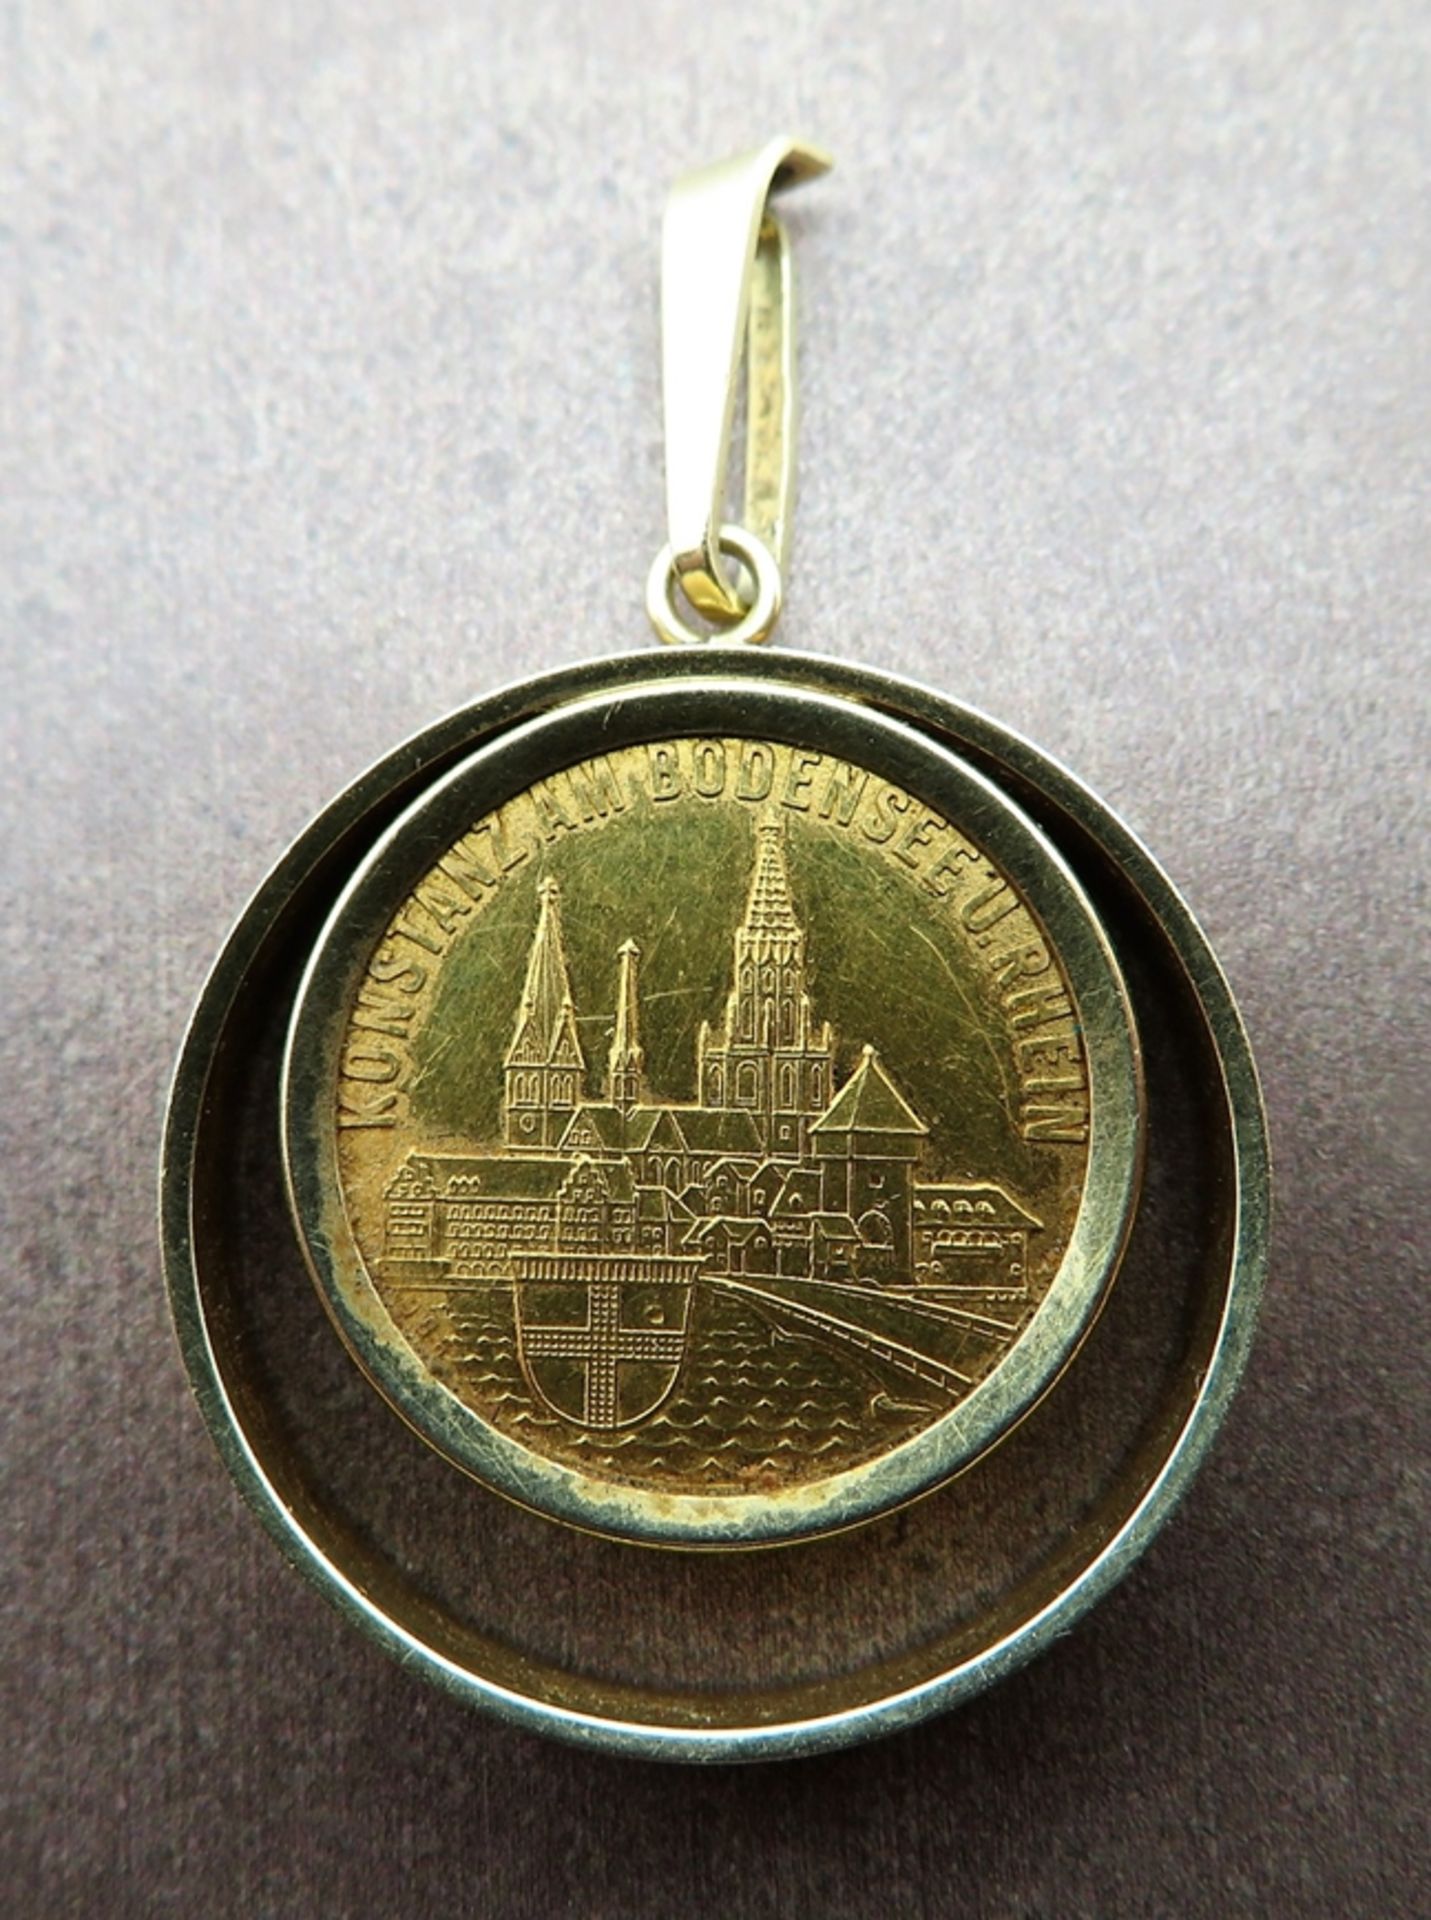 Anhänger mit Gedenkmedaille, Konzil zu Konstanz 1414 - 1418, Medaille Gelbgold 986/000, gepunzt, Fa